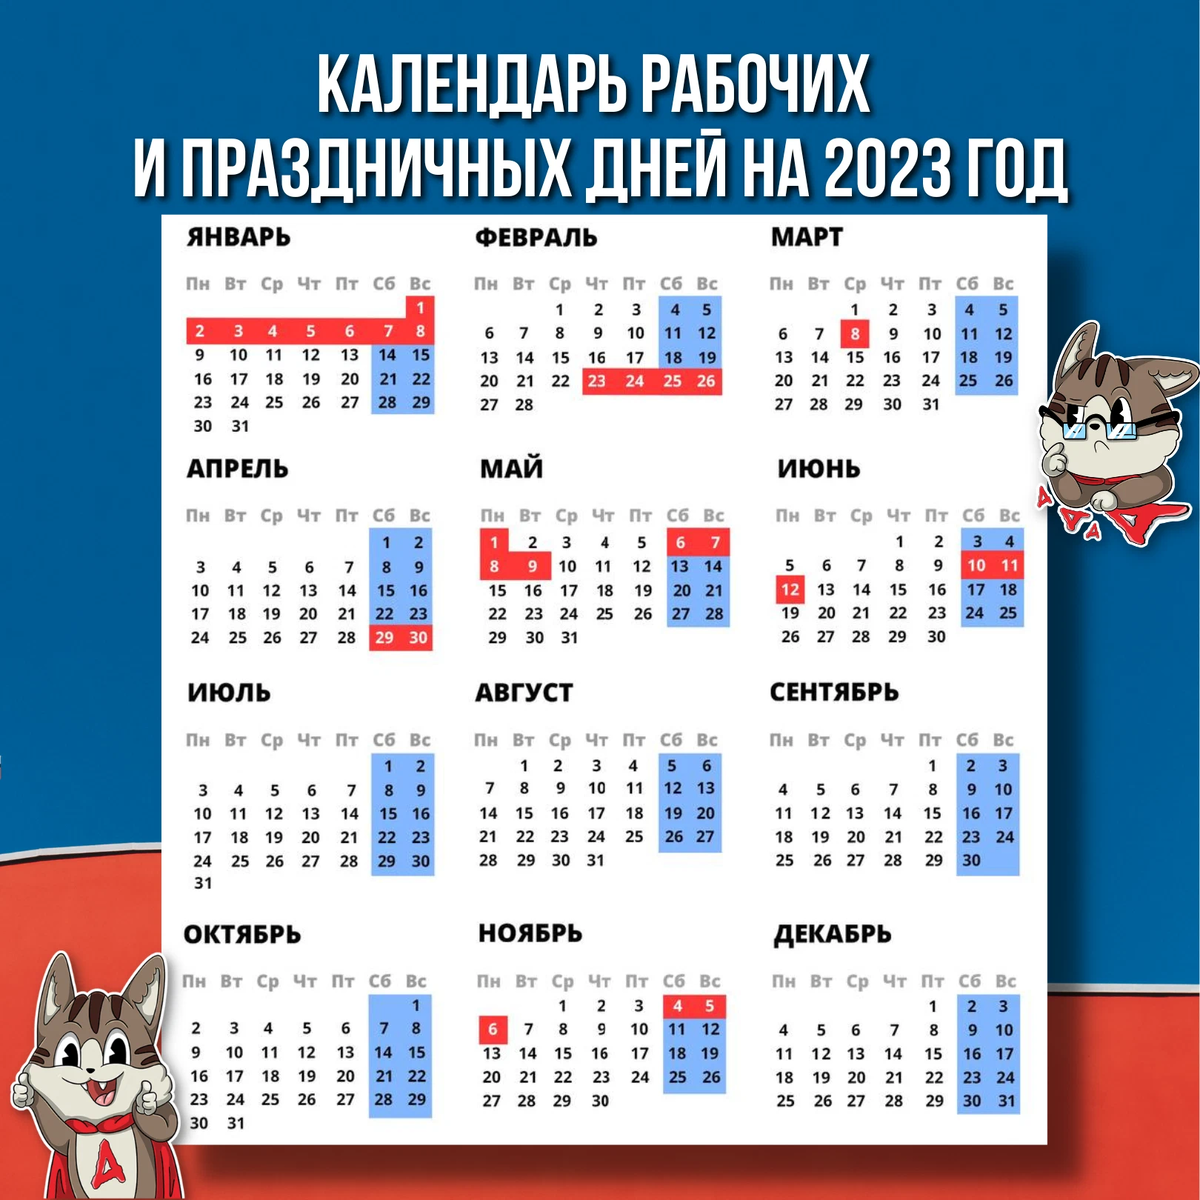 Перенос выходных 2023 году. Праздничные выходные в 2023 году. Календарные праздники на 2023 год. Новогодние выходные в 2023 году. Выходные и праздничные дни в 2023 году в России.